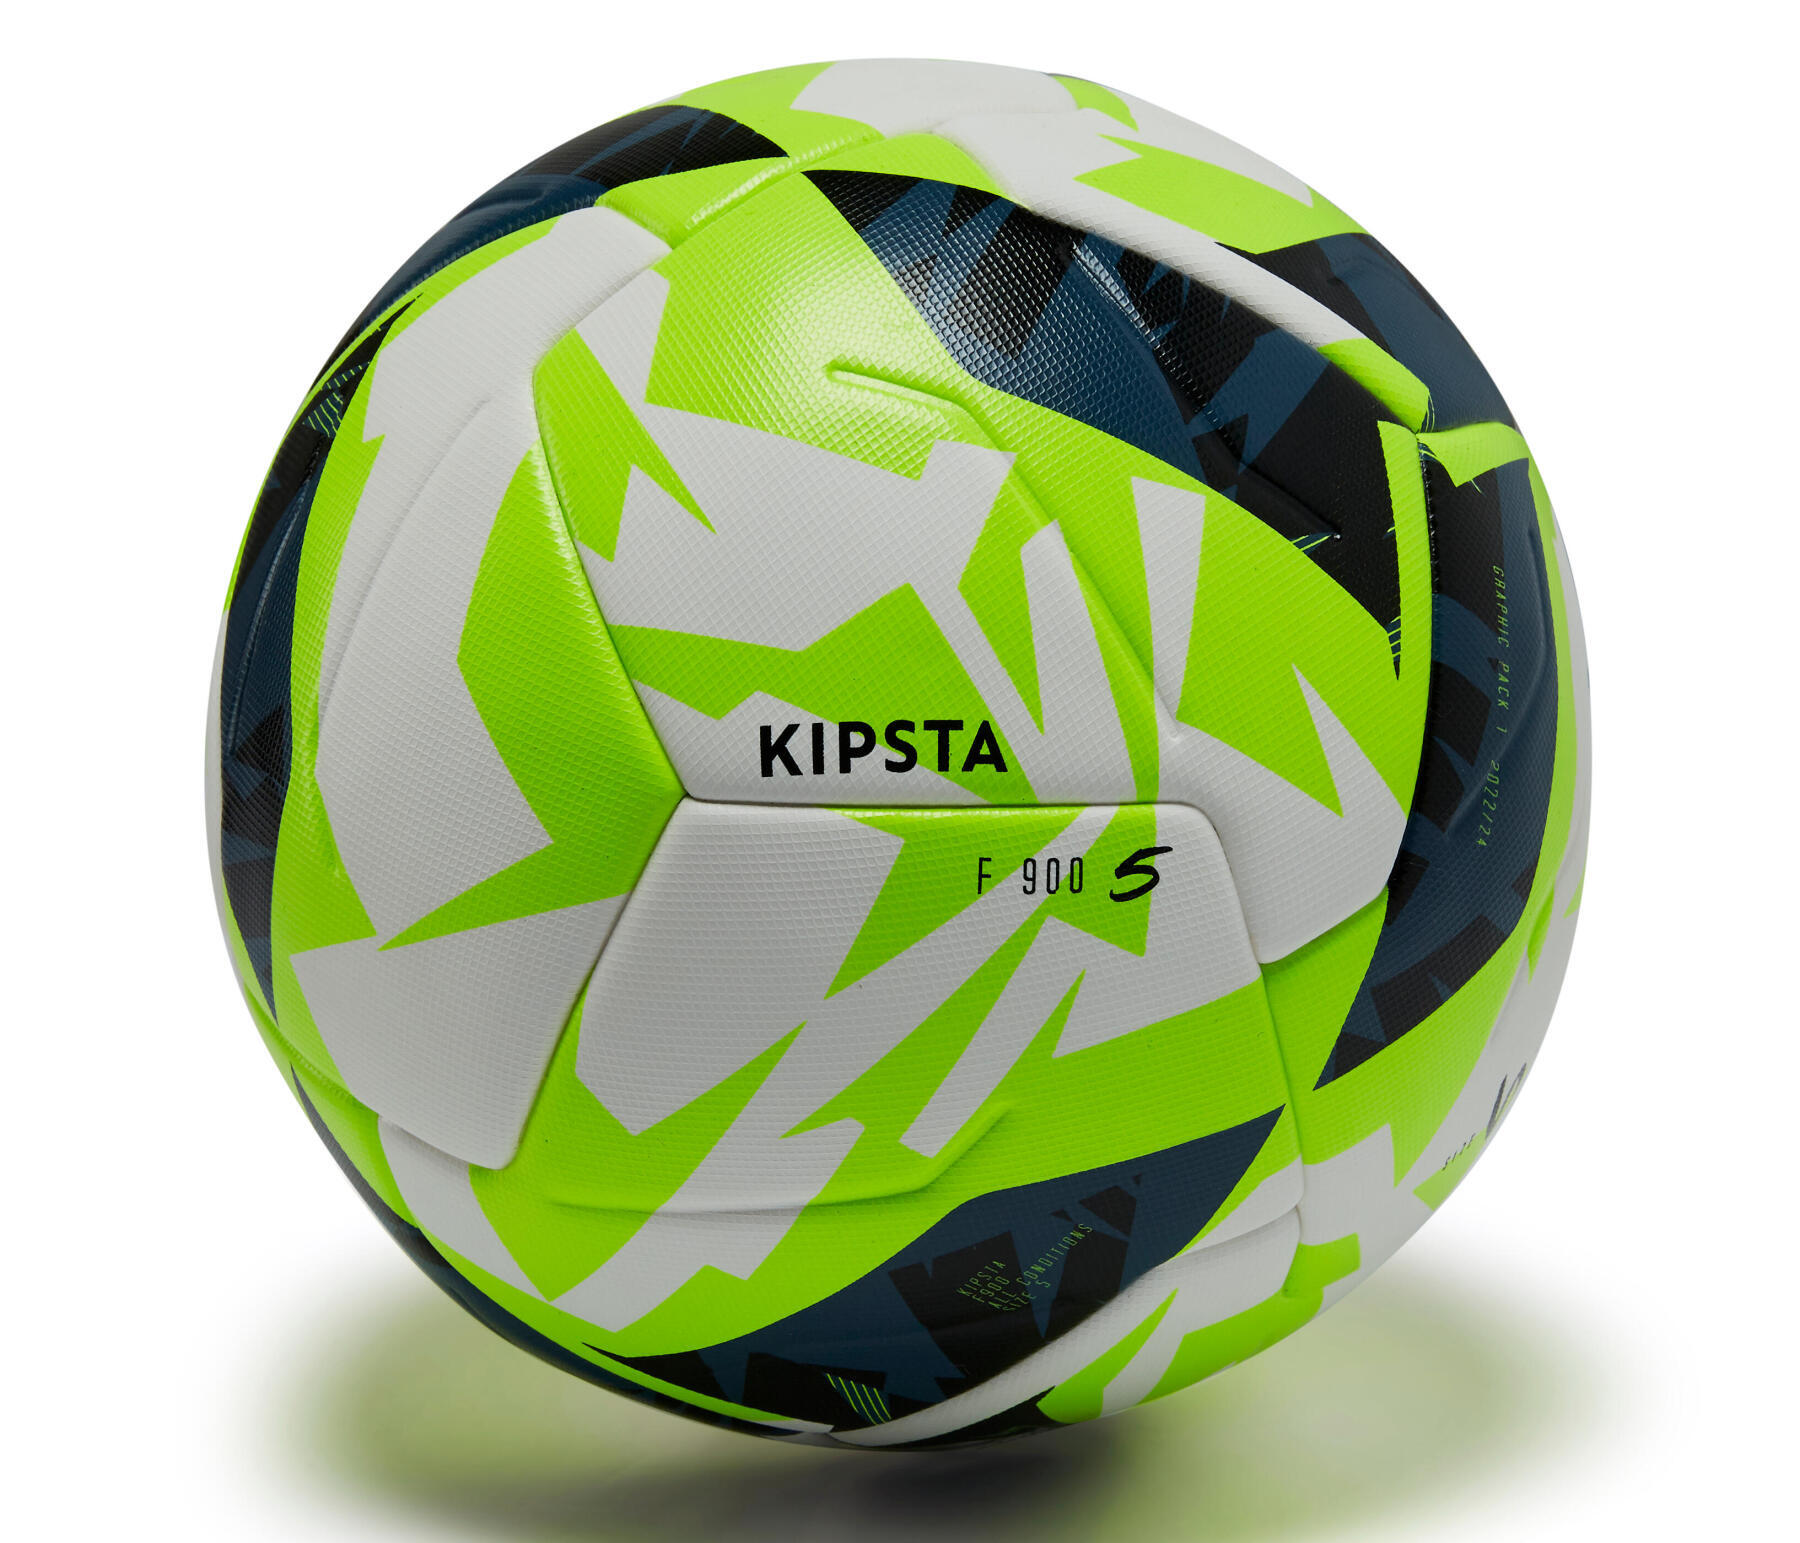 Kipsta-F900-S5